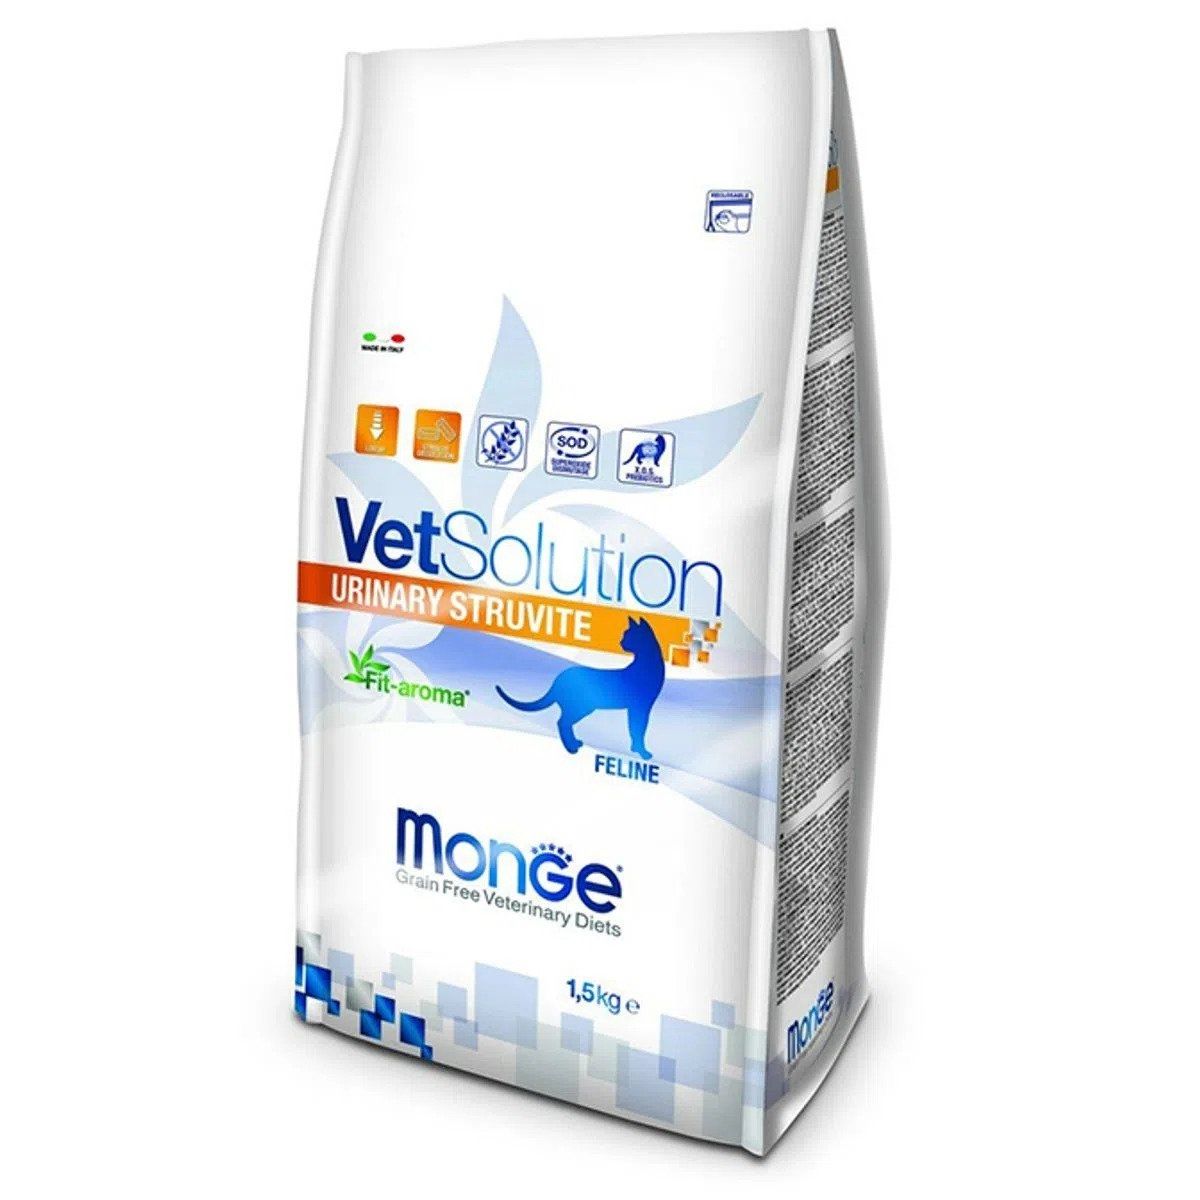 Monge Vetsolution Urinary Struvite Feline, 1.5 Kg